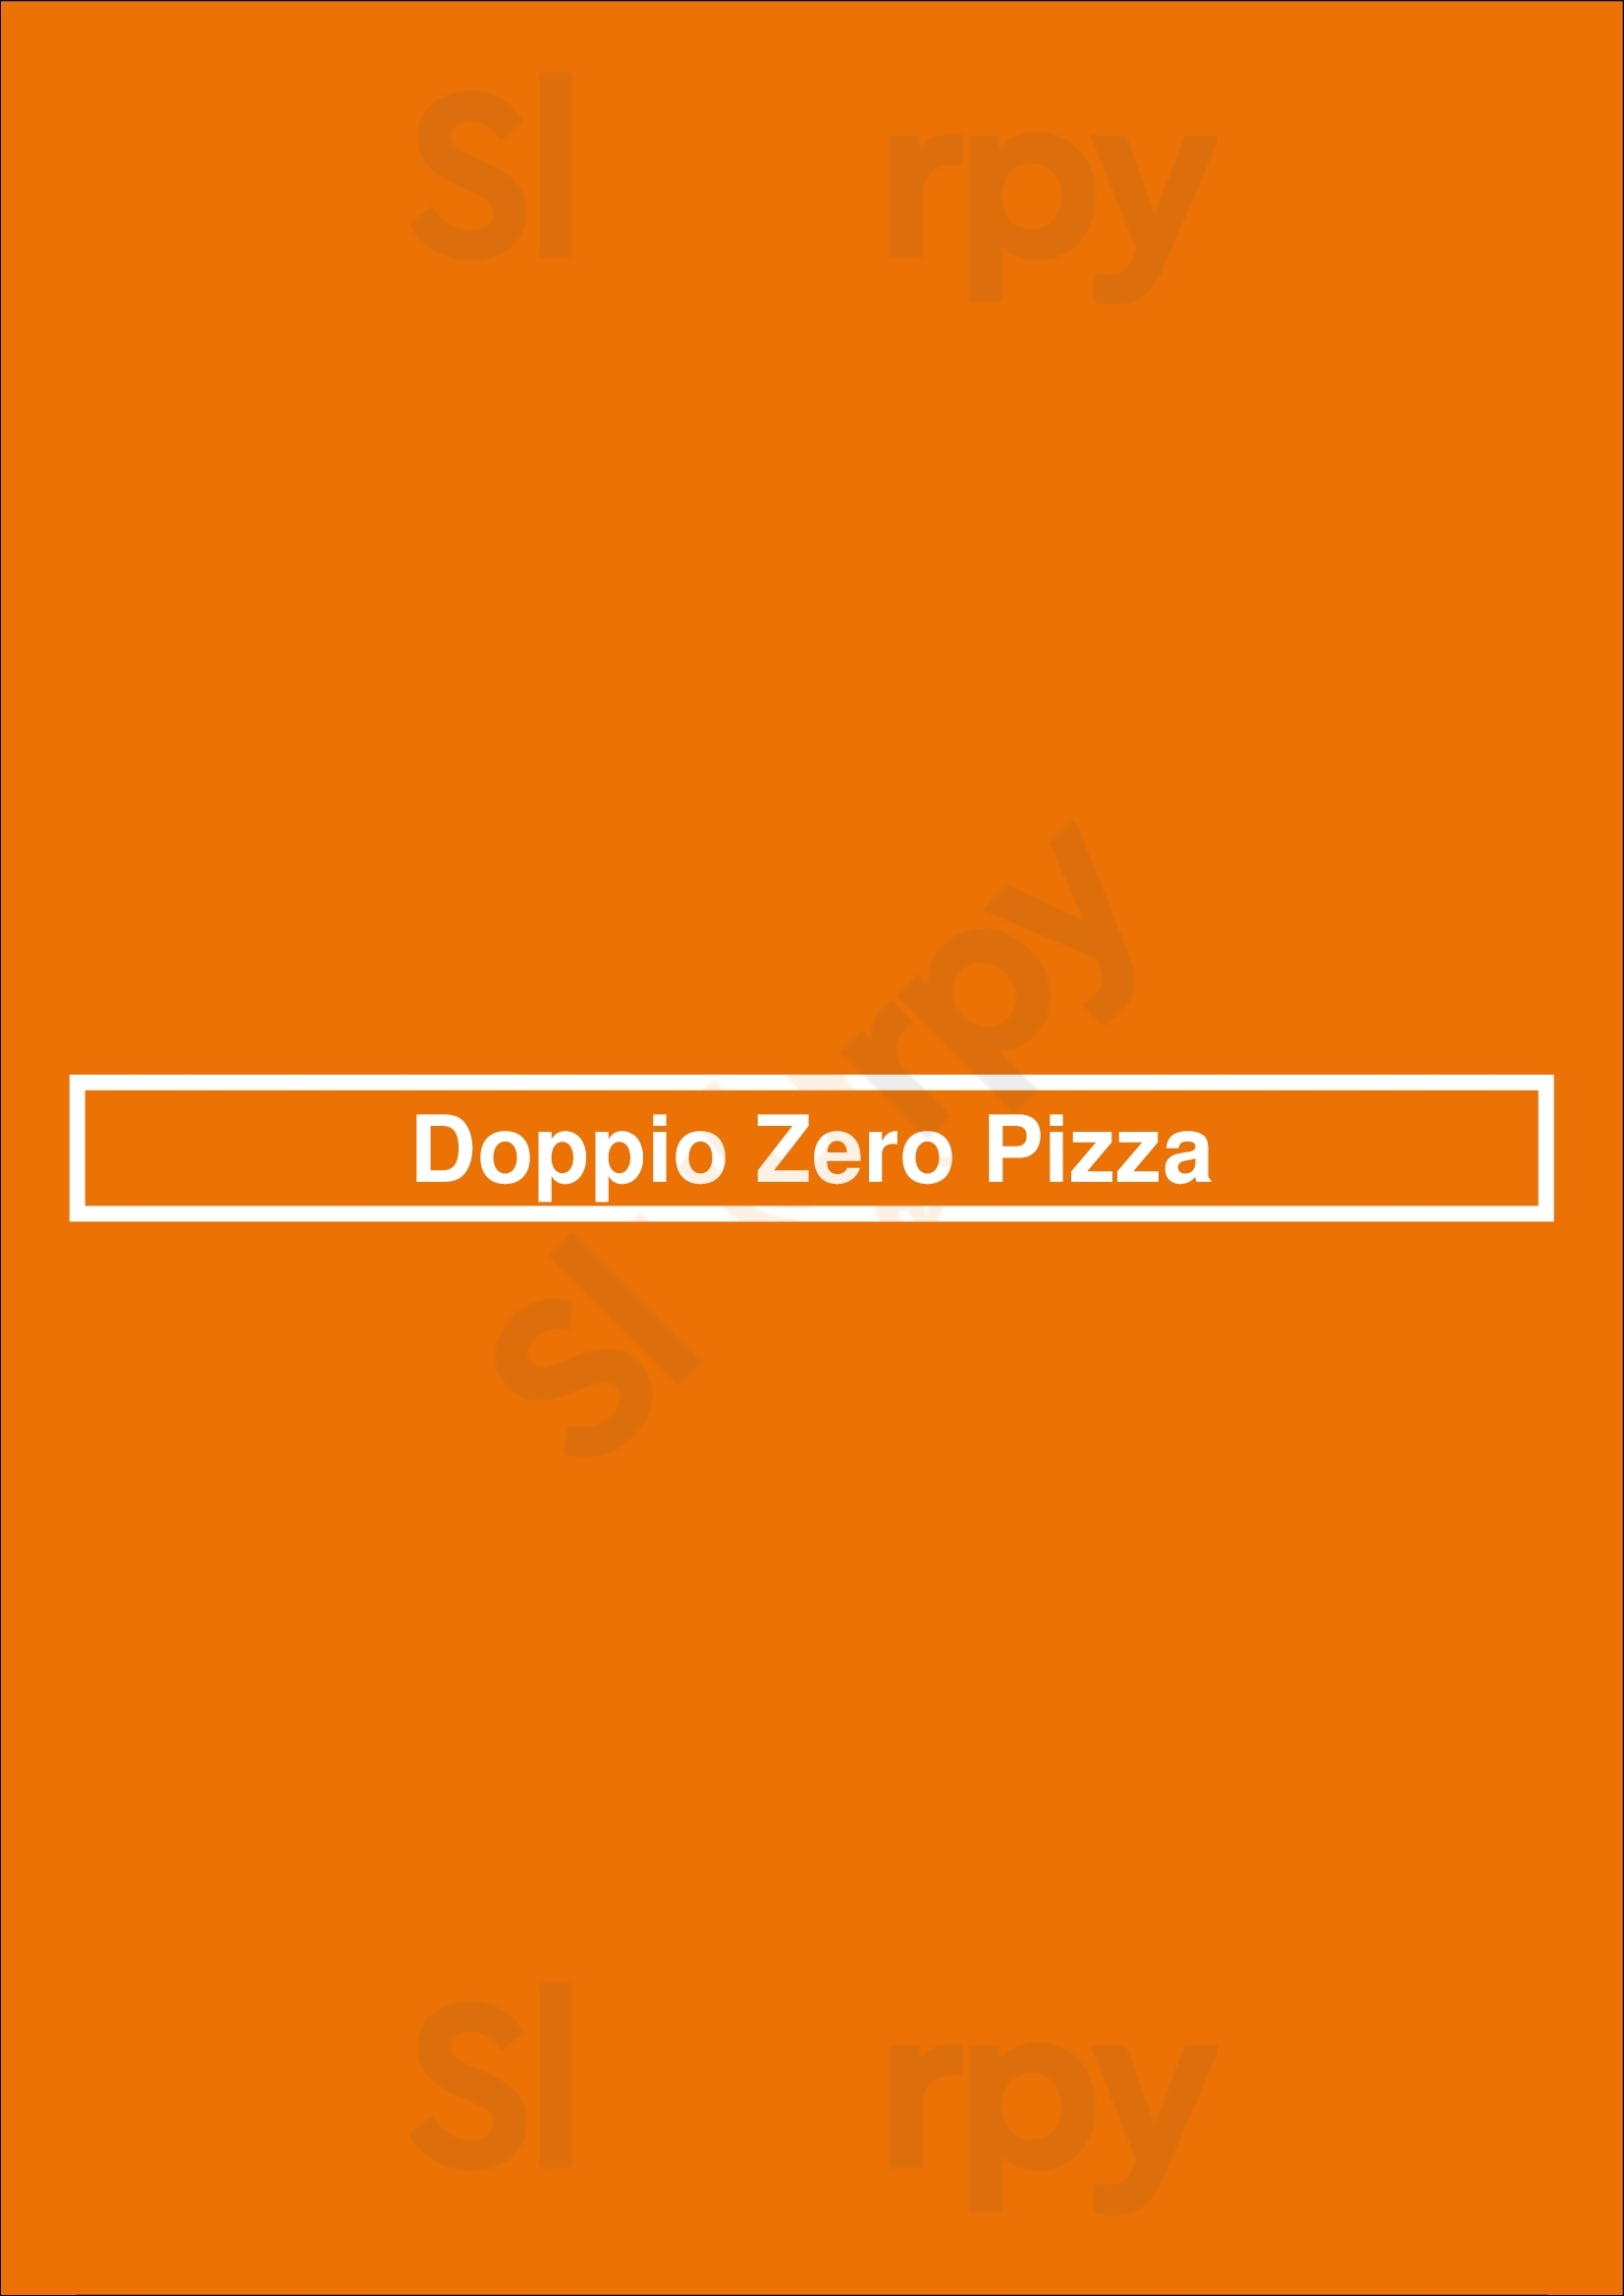 Doppio Zero Pizza Coquitlam Menu - 1